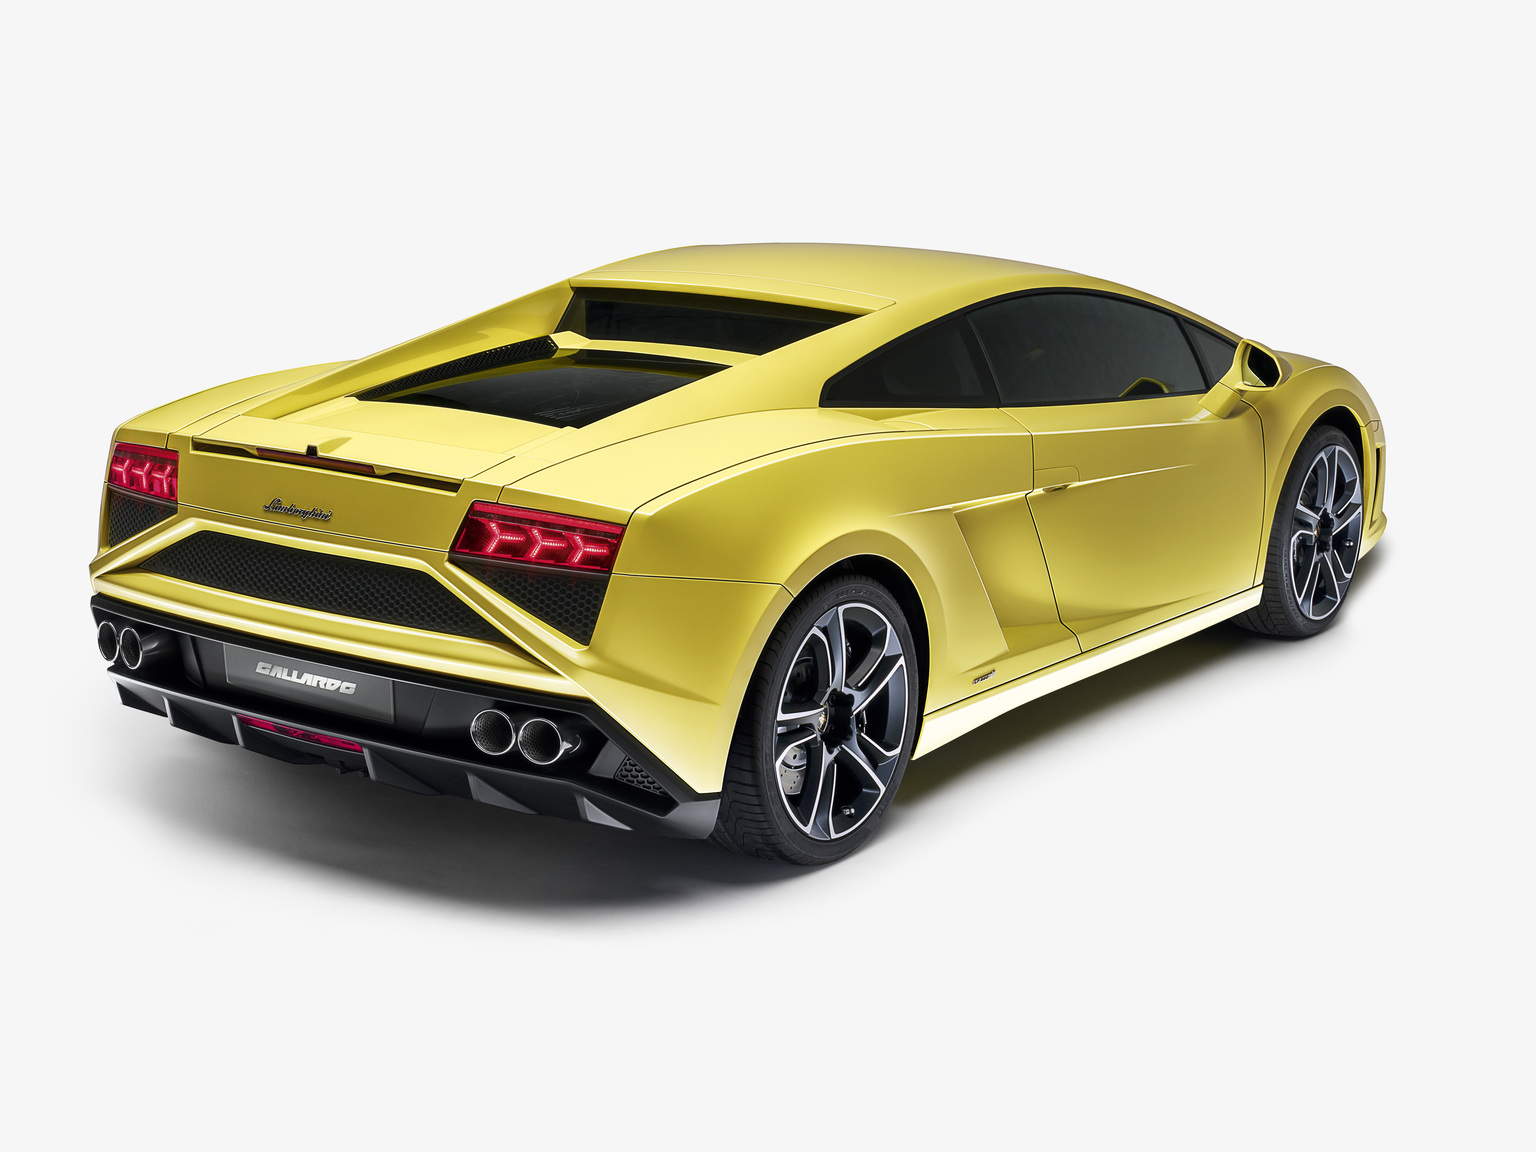 2013 Lamborghini Gallardo LP560-4 | Lamborghini ...